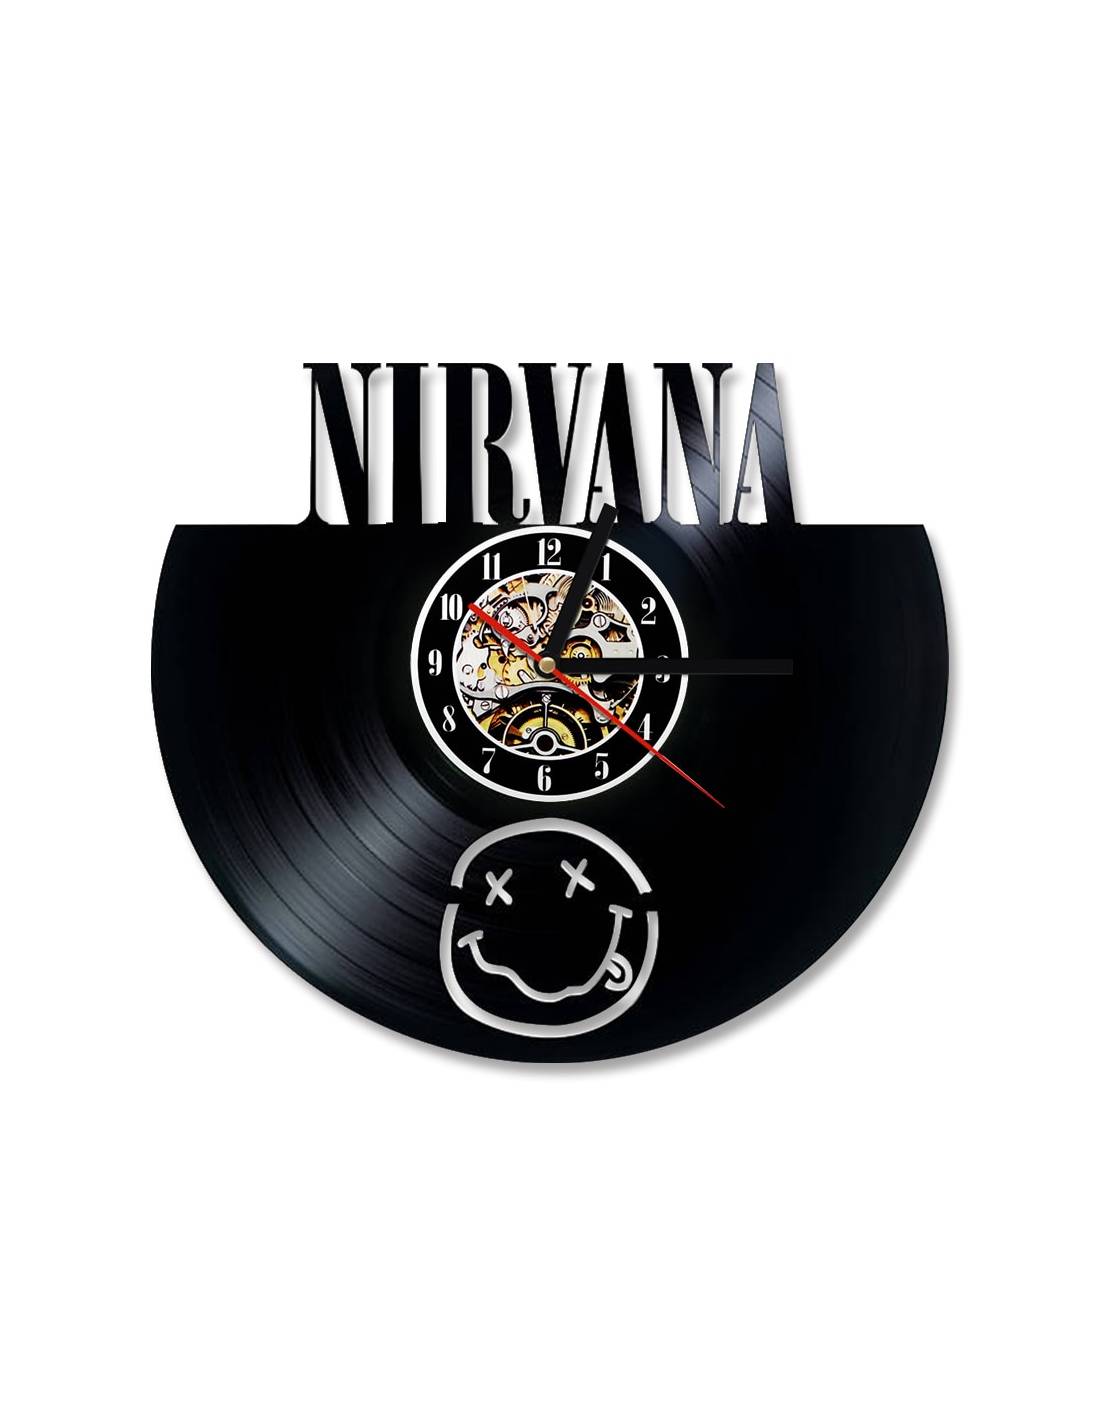 Nirvana 01 - Horloge disque vinyle déco